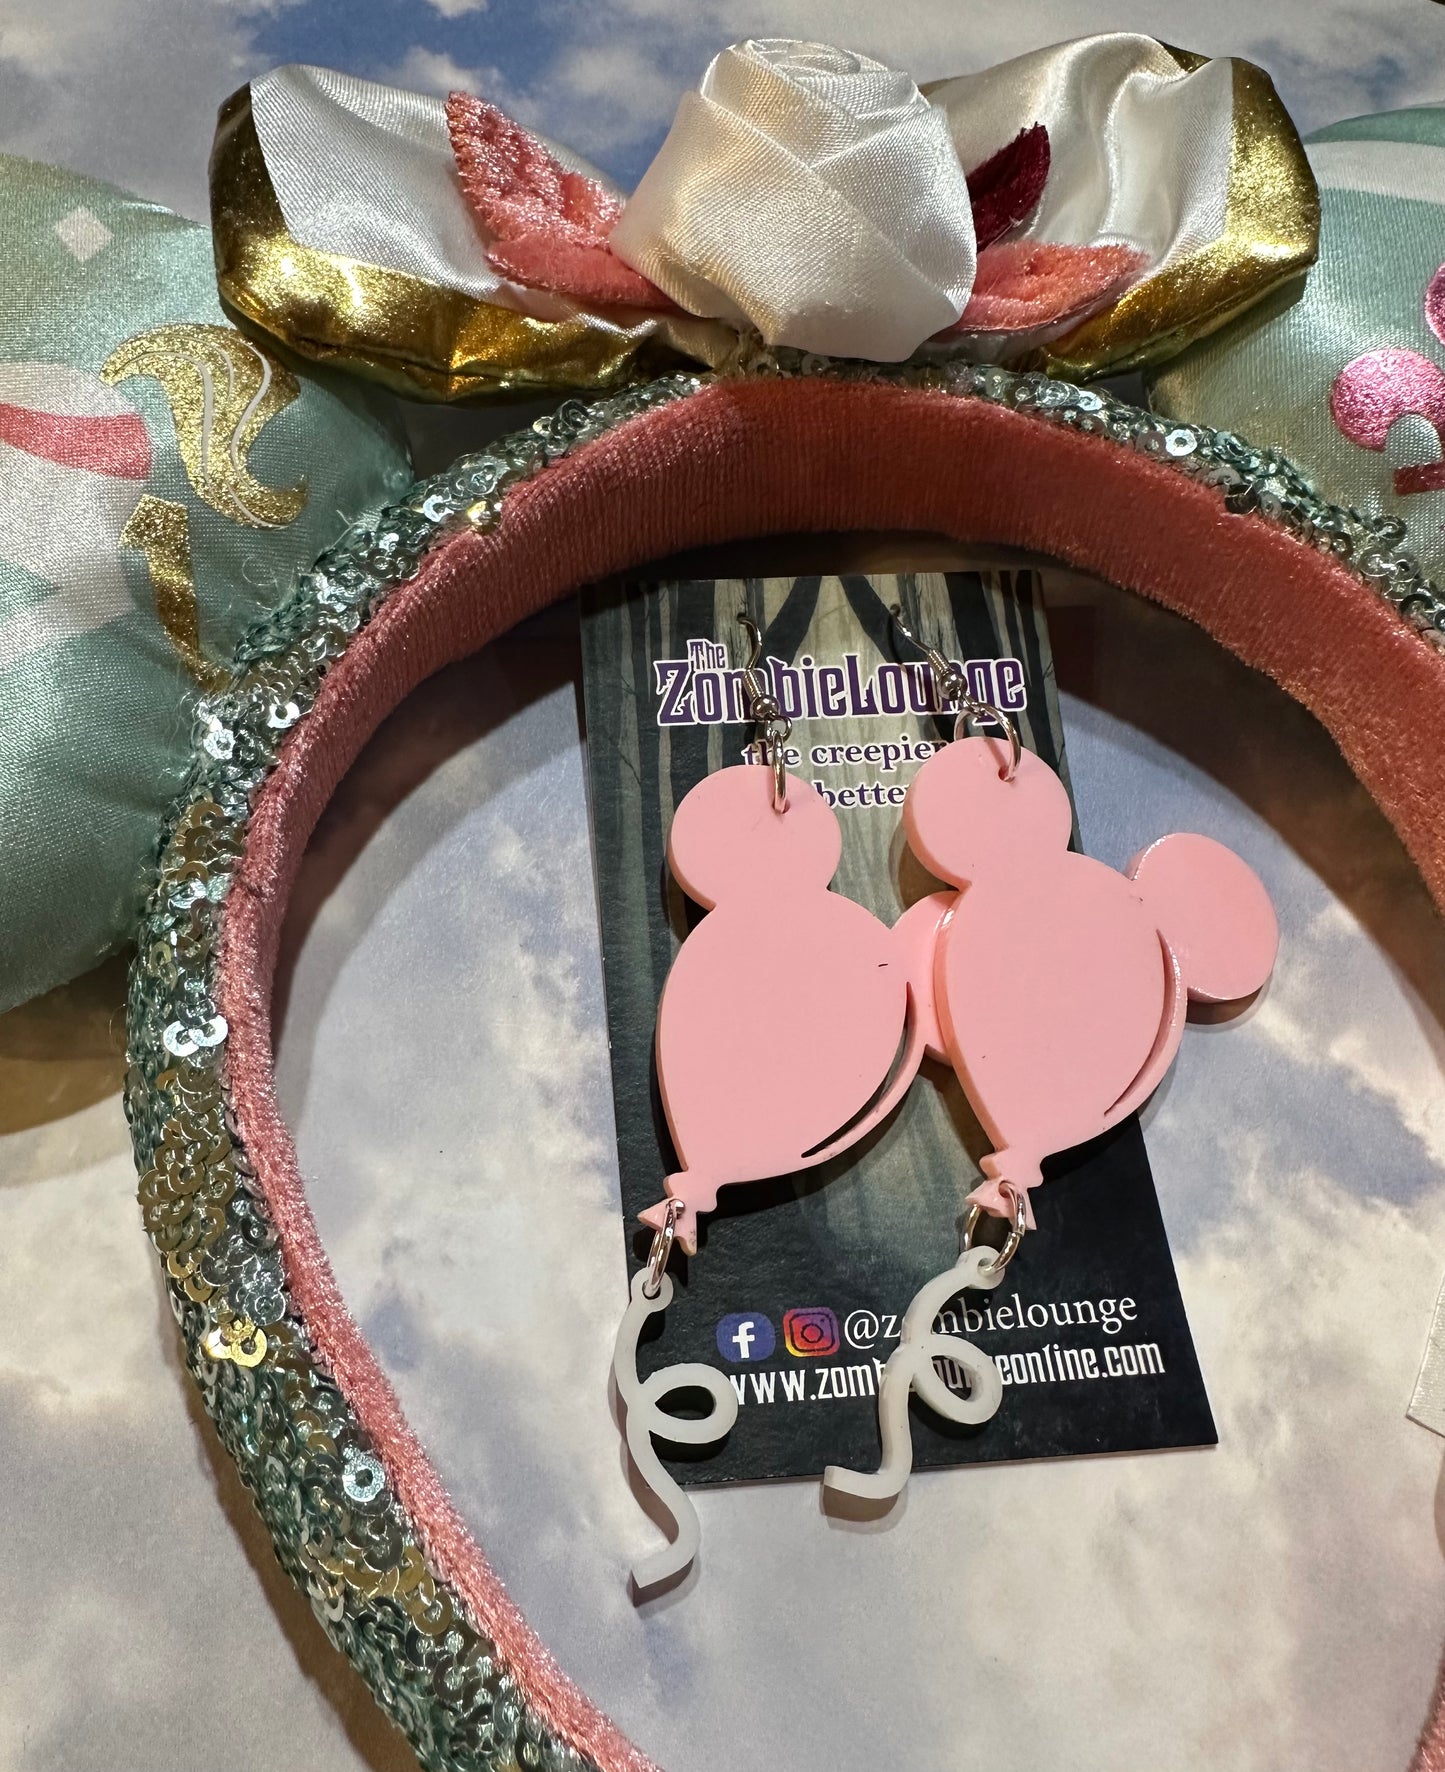 Mouse Balloon Earrings